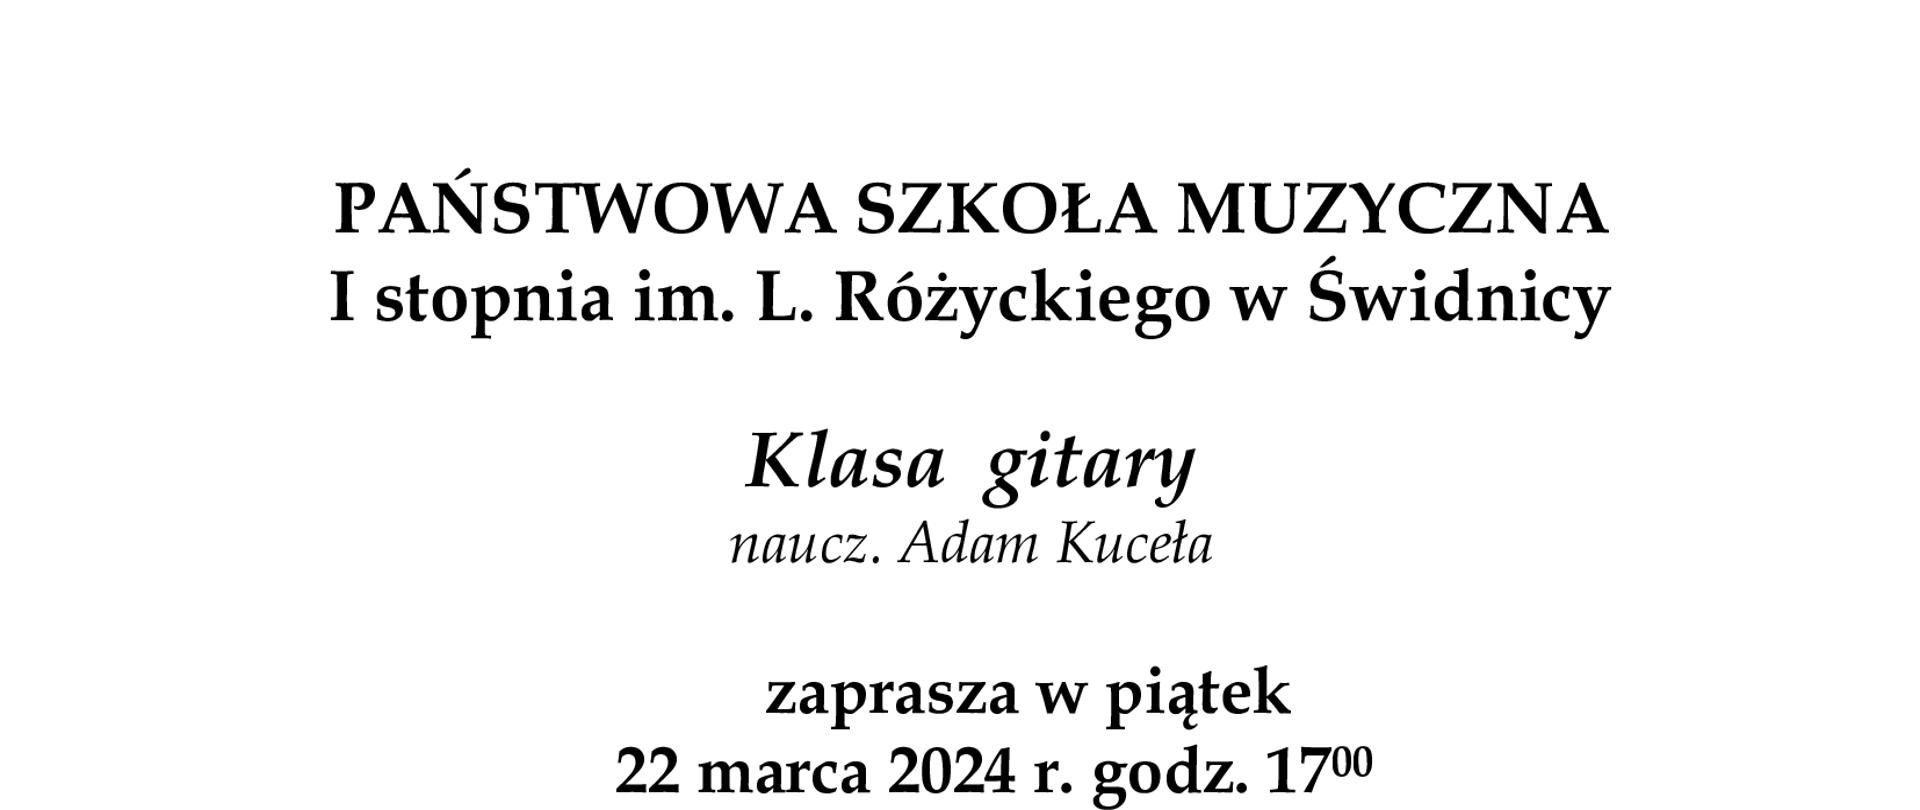 Plakat informujący o popisie klaasy gitary A.Kuceły w dniu 22 marca 2024. Czarne napisy na białym tle. Poniżej napisów grafika rysunkowa przedstawia koncert gitarowy.